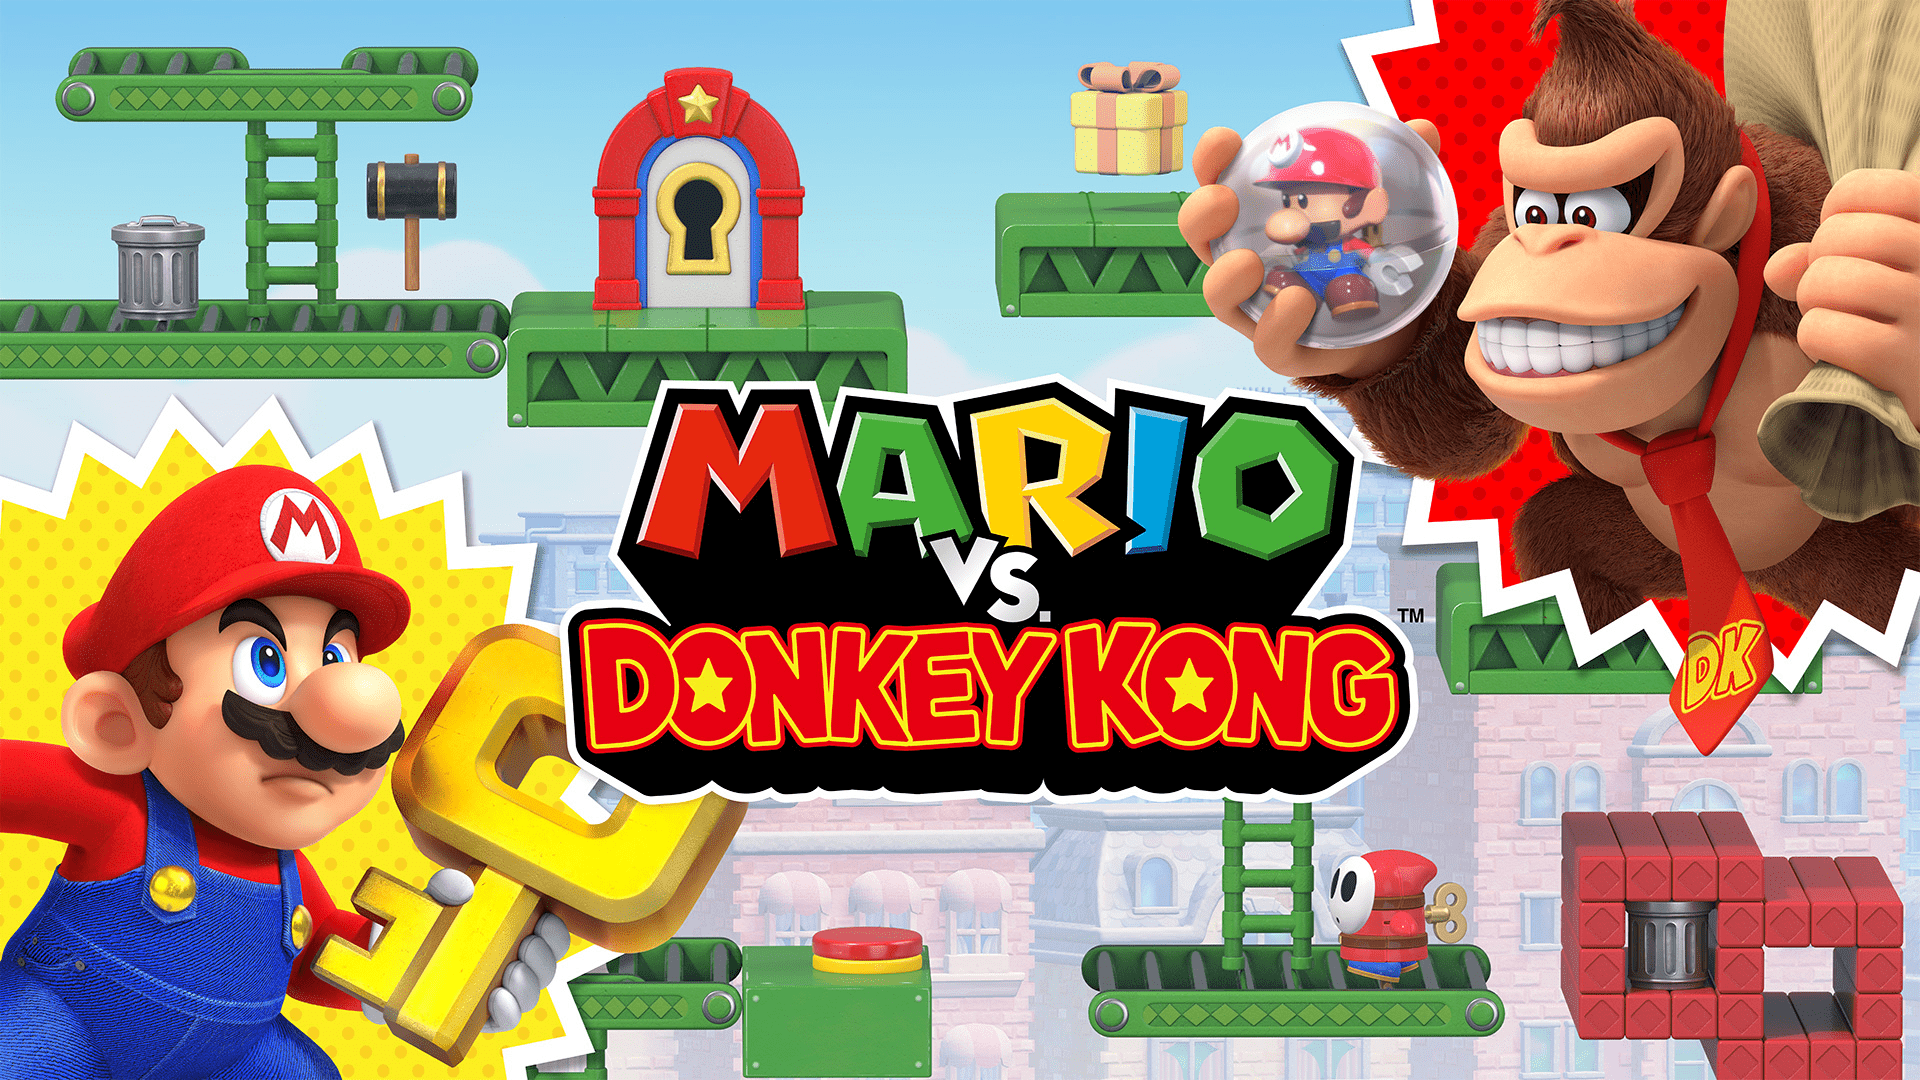 Mario vs Donkey Kong (1)